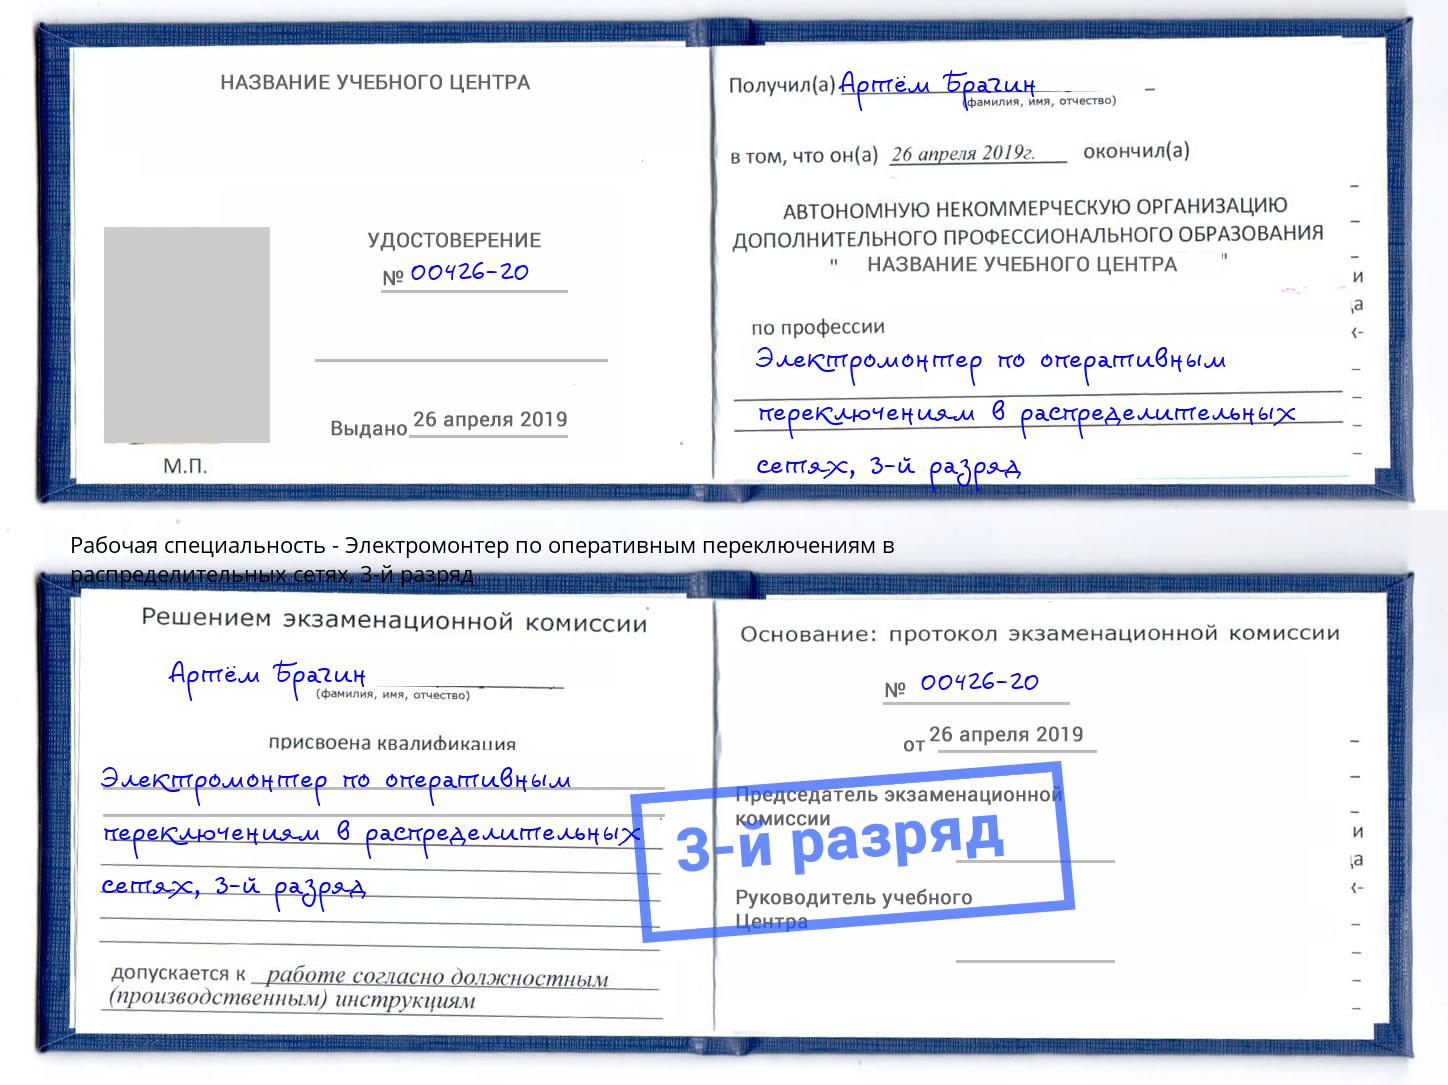 корочка 3-й разряд Электромонтер по оперативным переключениям в распределительных сетях Брянск